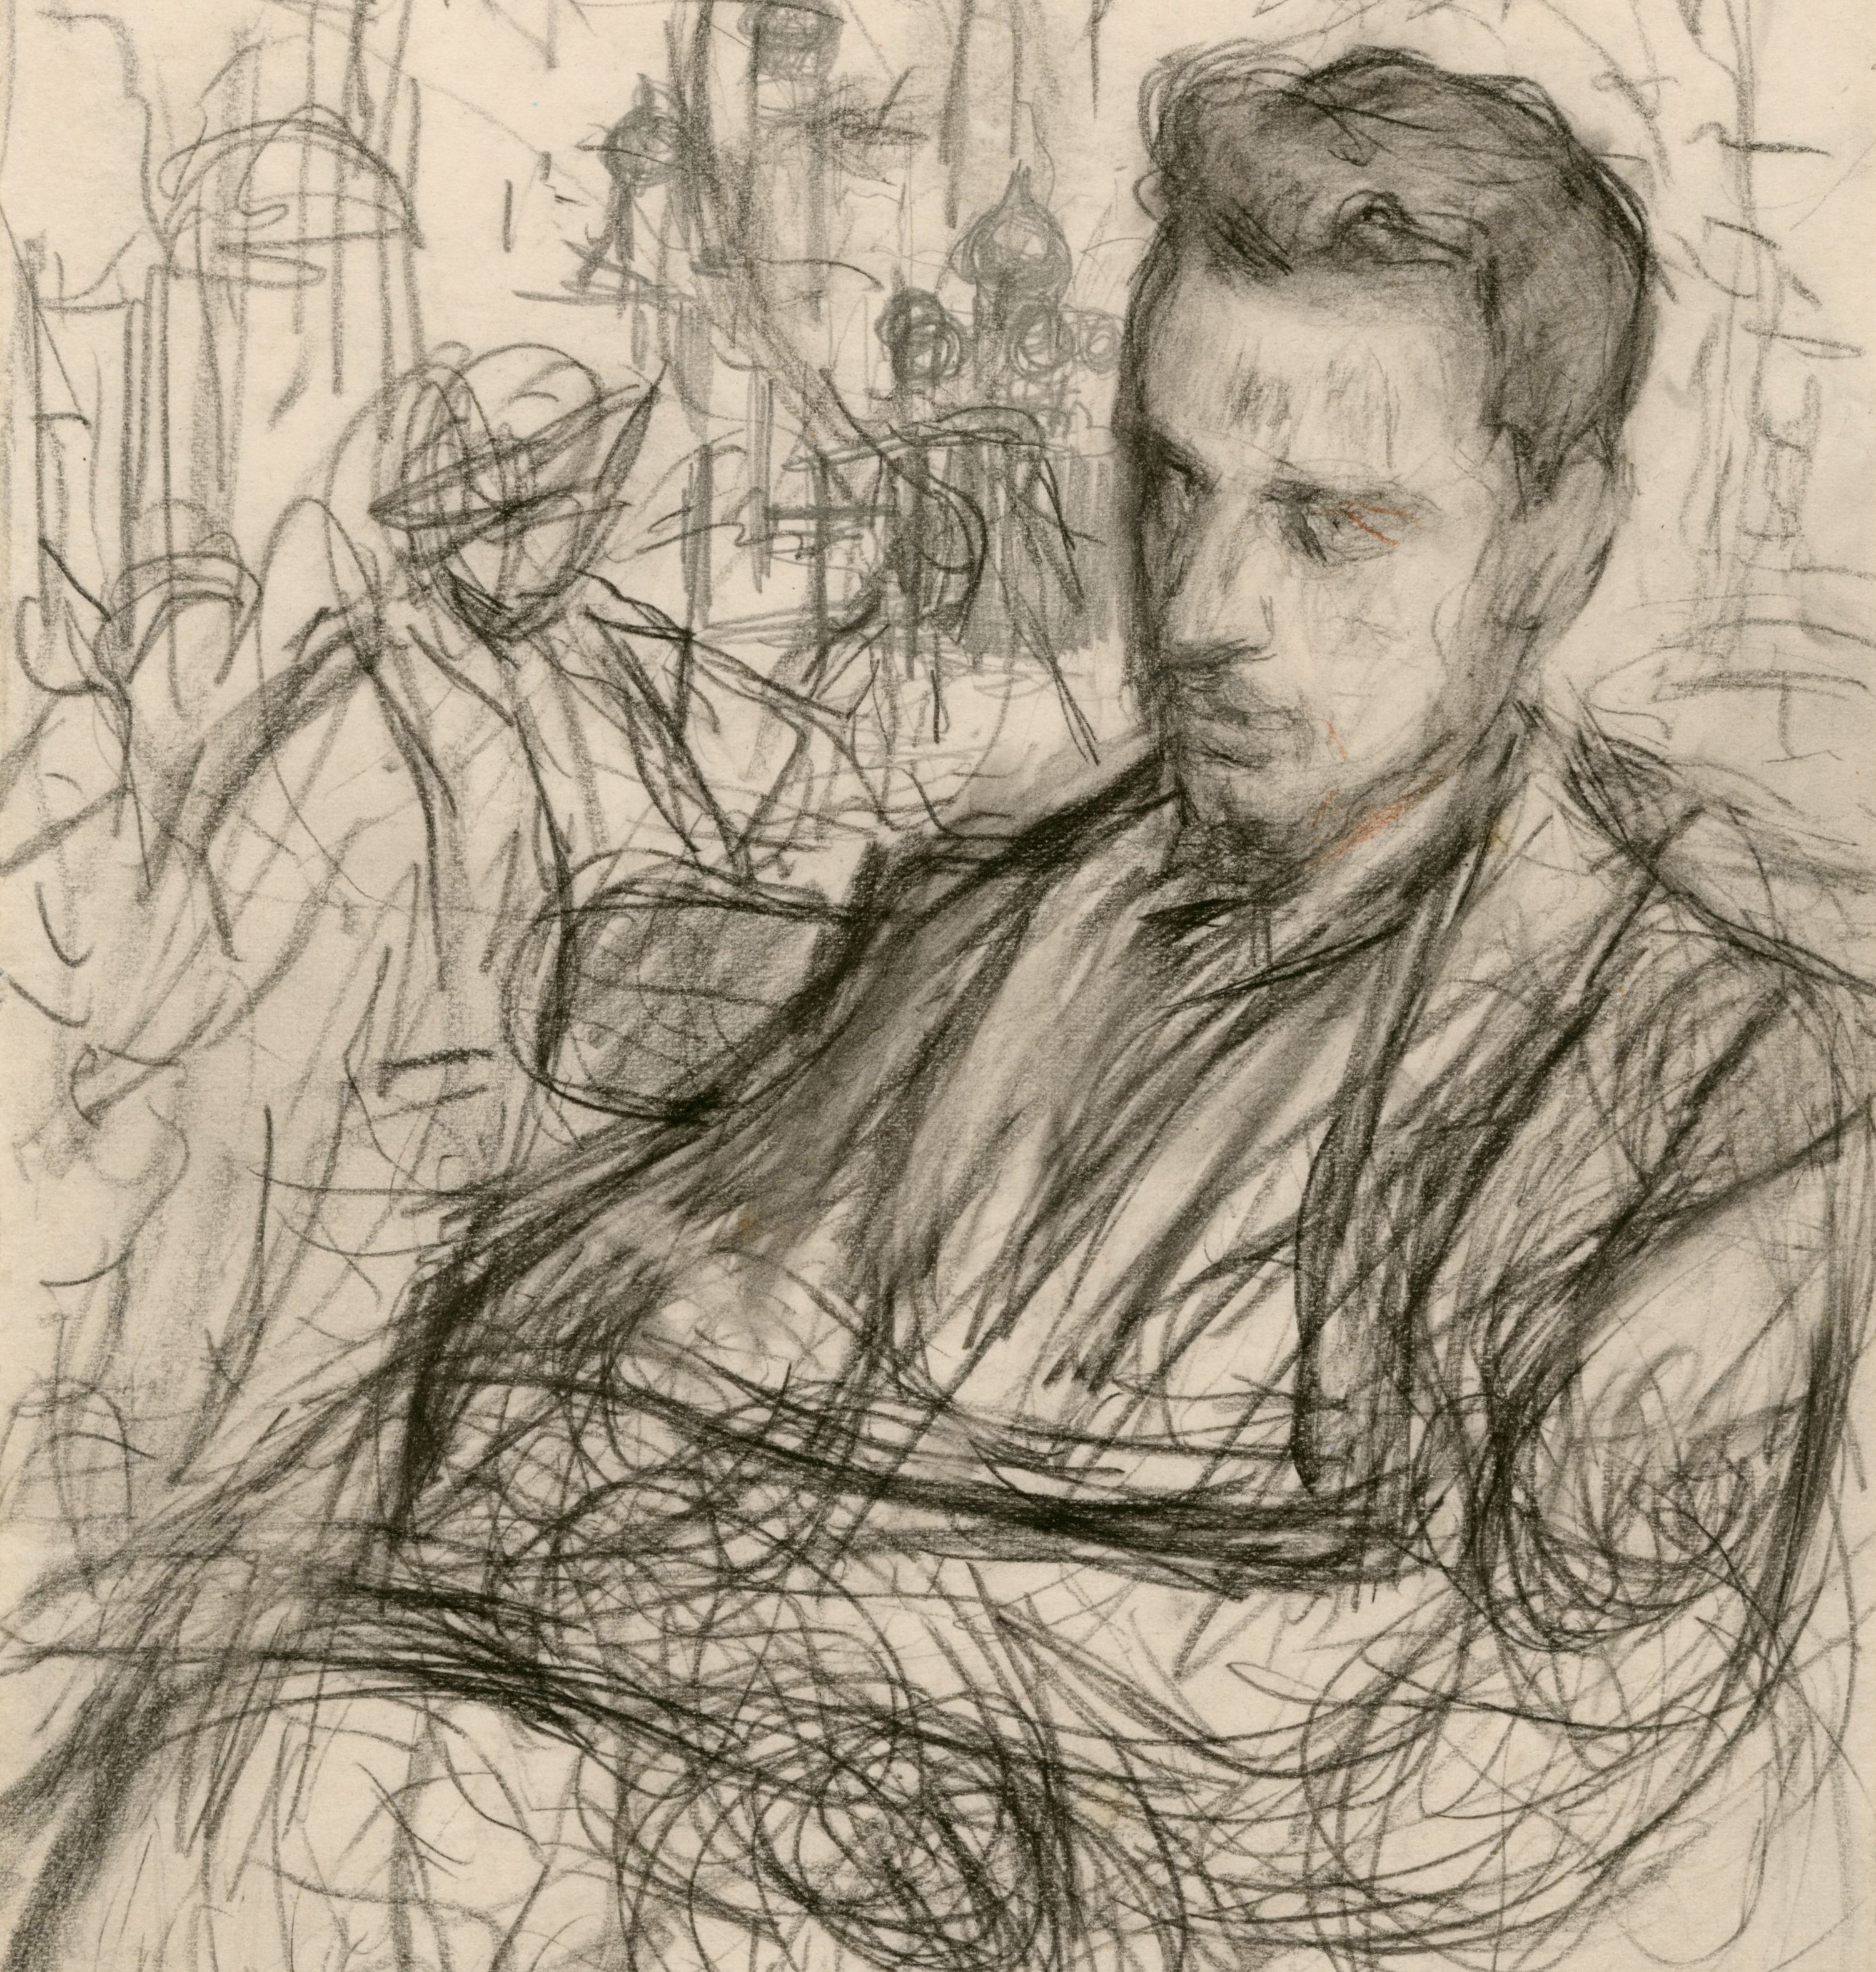 Pencil portrait of the poet Rainer Maria Rilke